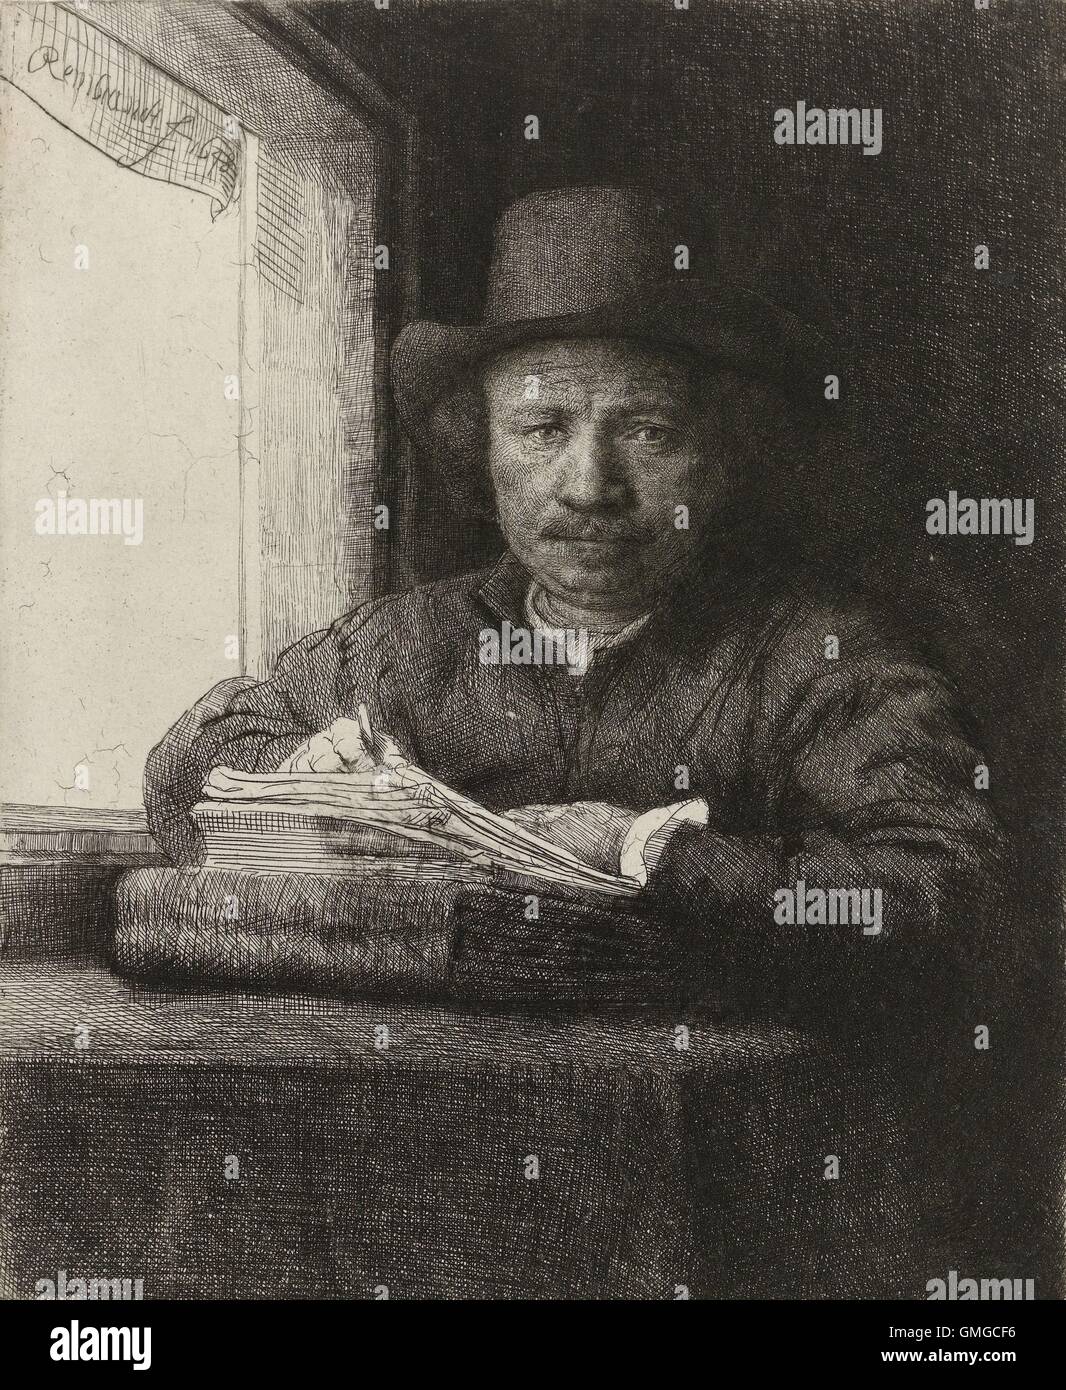 Auto-portrait de Rembrandt, gravage en une fenêtre, de Rembrandt, 1648, le néerlandais d'estampes, de gravures sur papier. 42 ans sur un dessin de Rembrandt copperplate à partir de son reflet dans un miroir. Il décrit lui-même dans un simple chapeau et veste, les vêtements dans lesquels il travaillait habituellement (BSLOC 2016 3 27) Banque D'Images